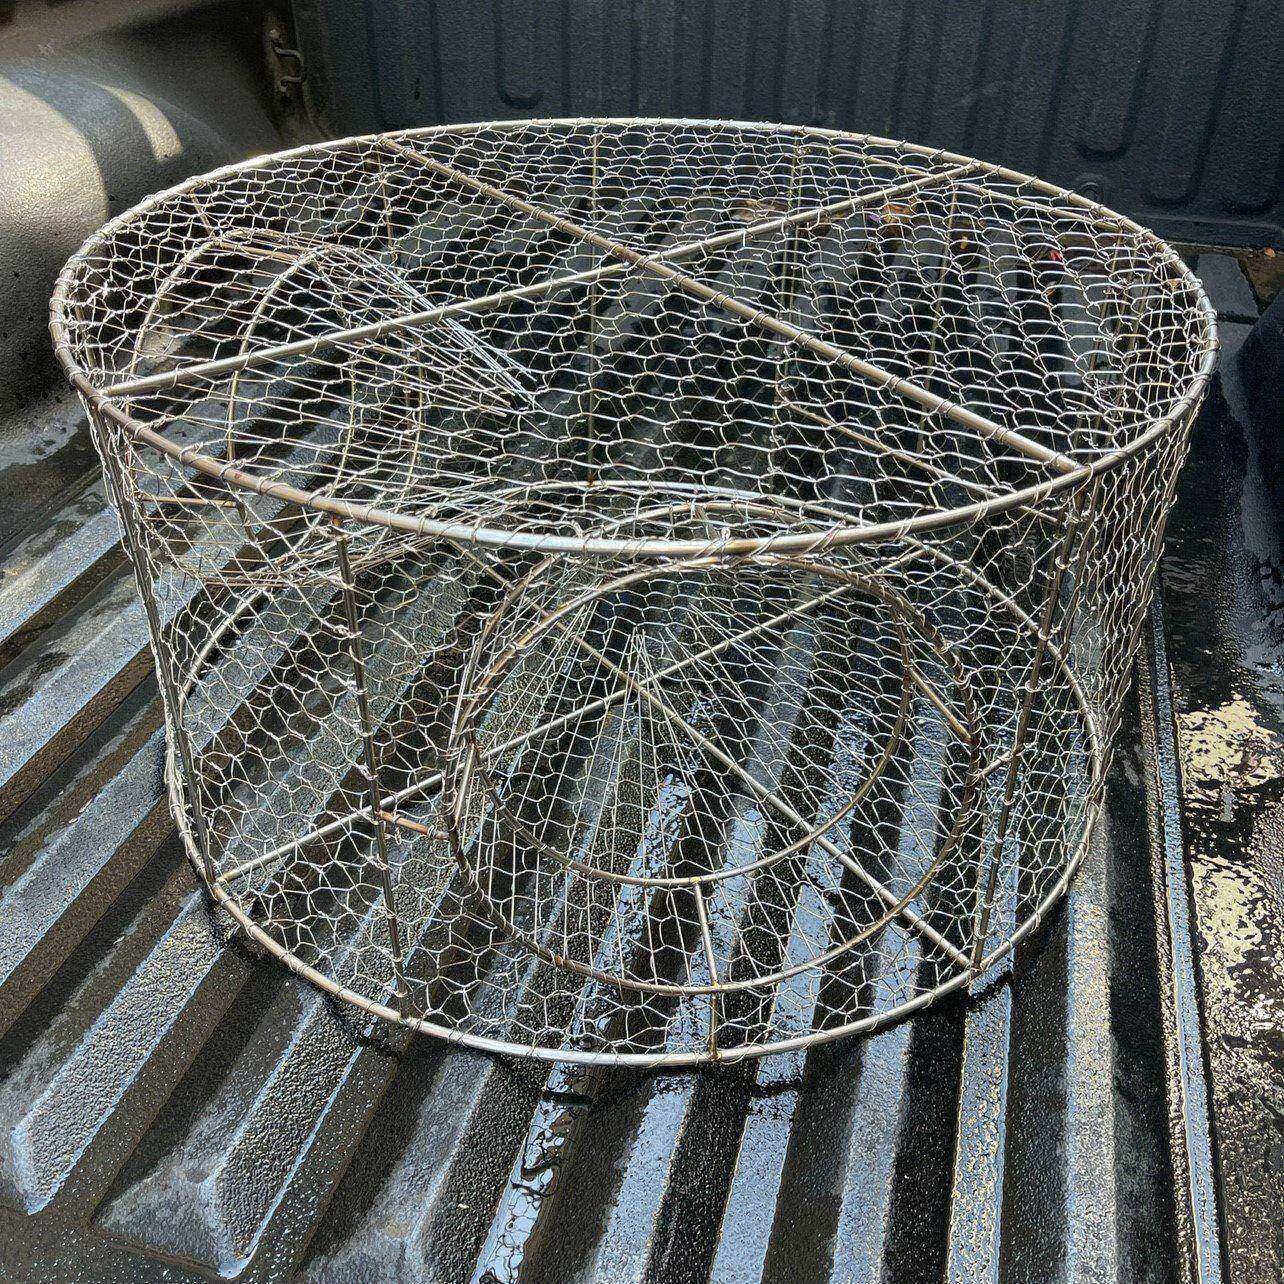 合武渔具不锈钢捕鱼笼自动反复进鱼直径60公分两个入口高30公分 不锈钢鱼笼60*30cm